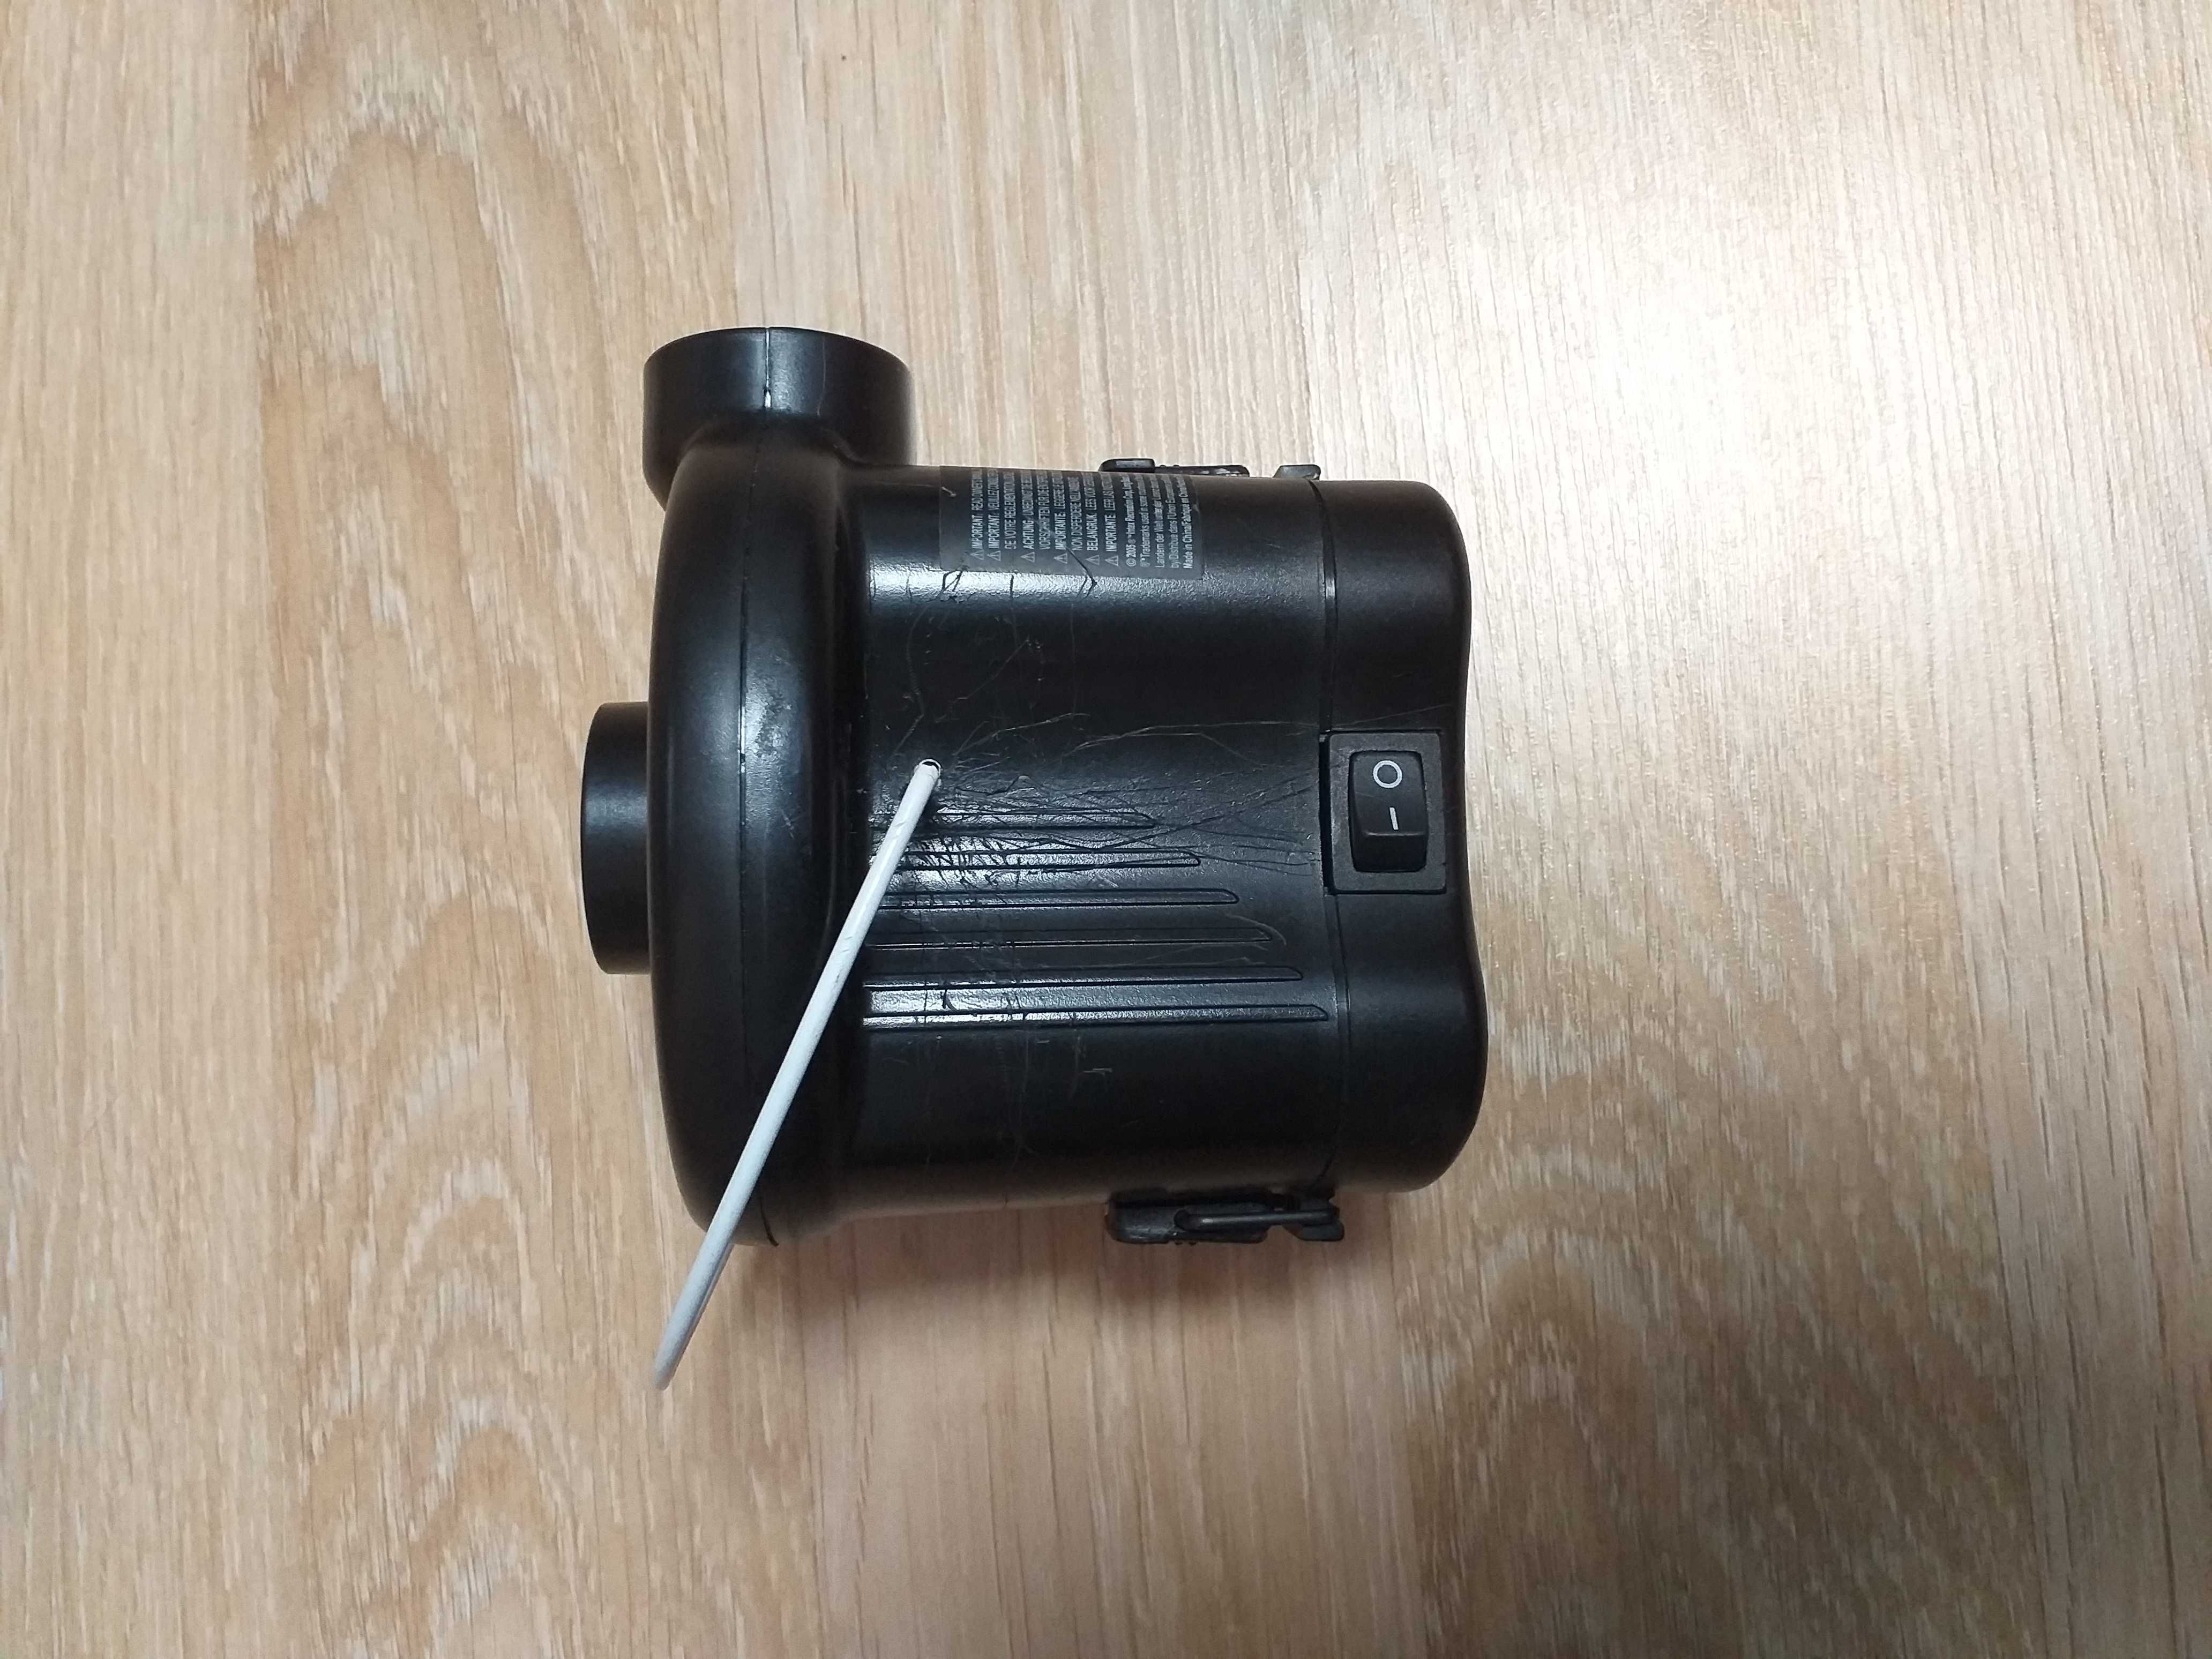 Pompa electrica Intex Quick-Fill cu baterii